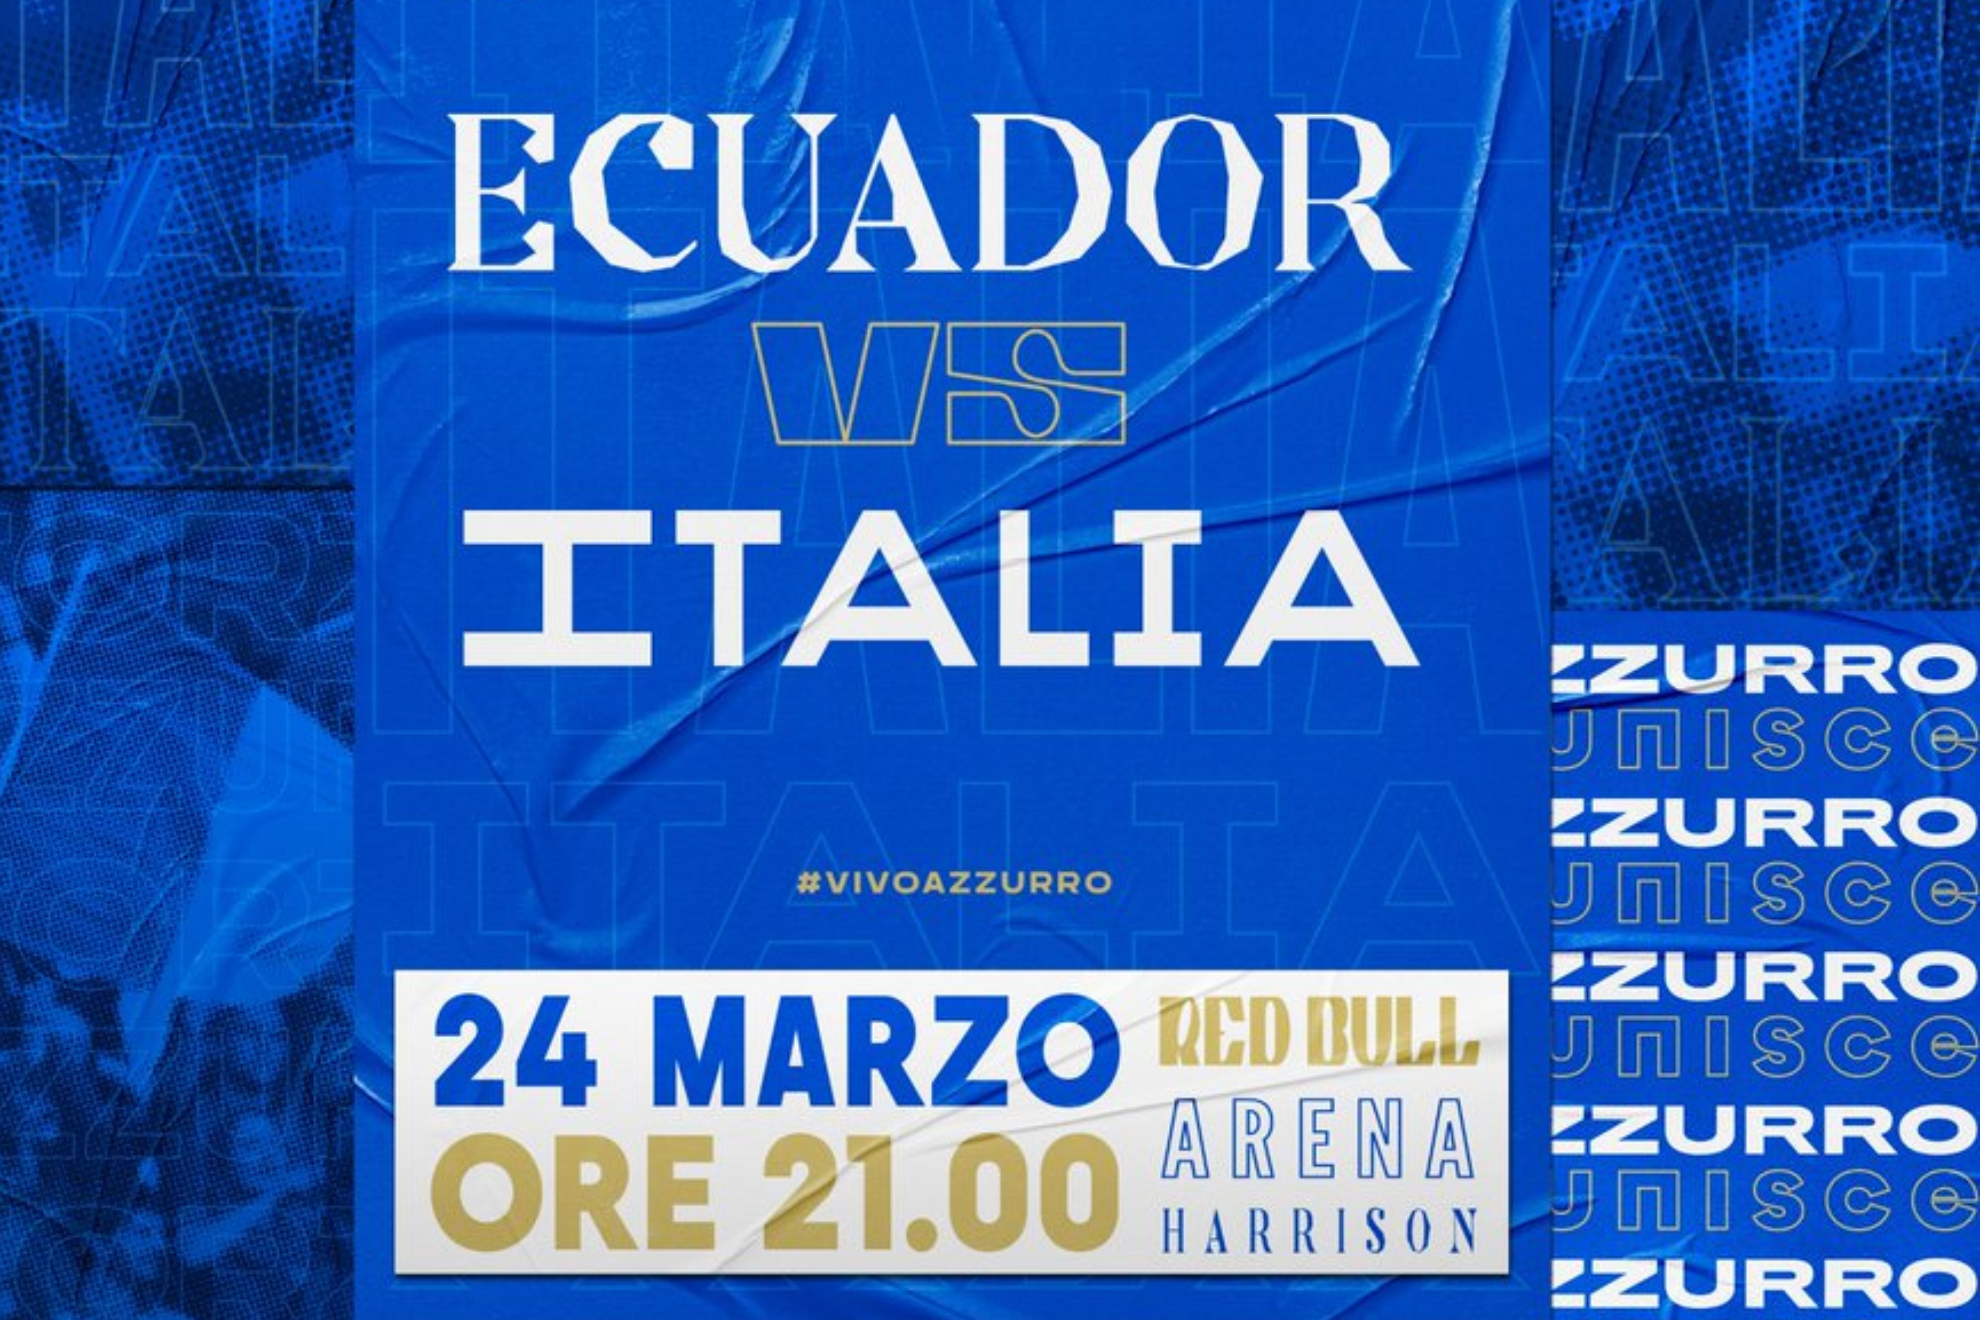 ECUADORS vs ITALIA HOY 24 de marzo.